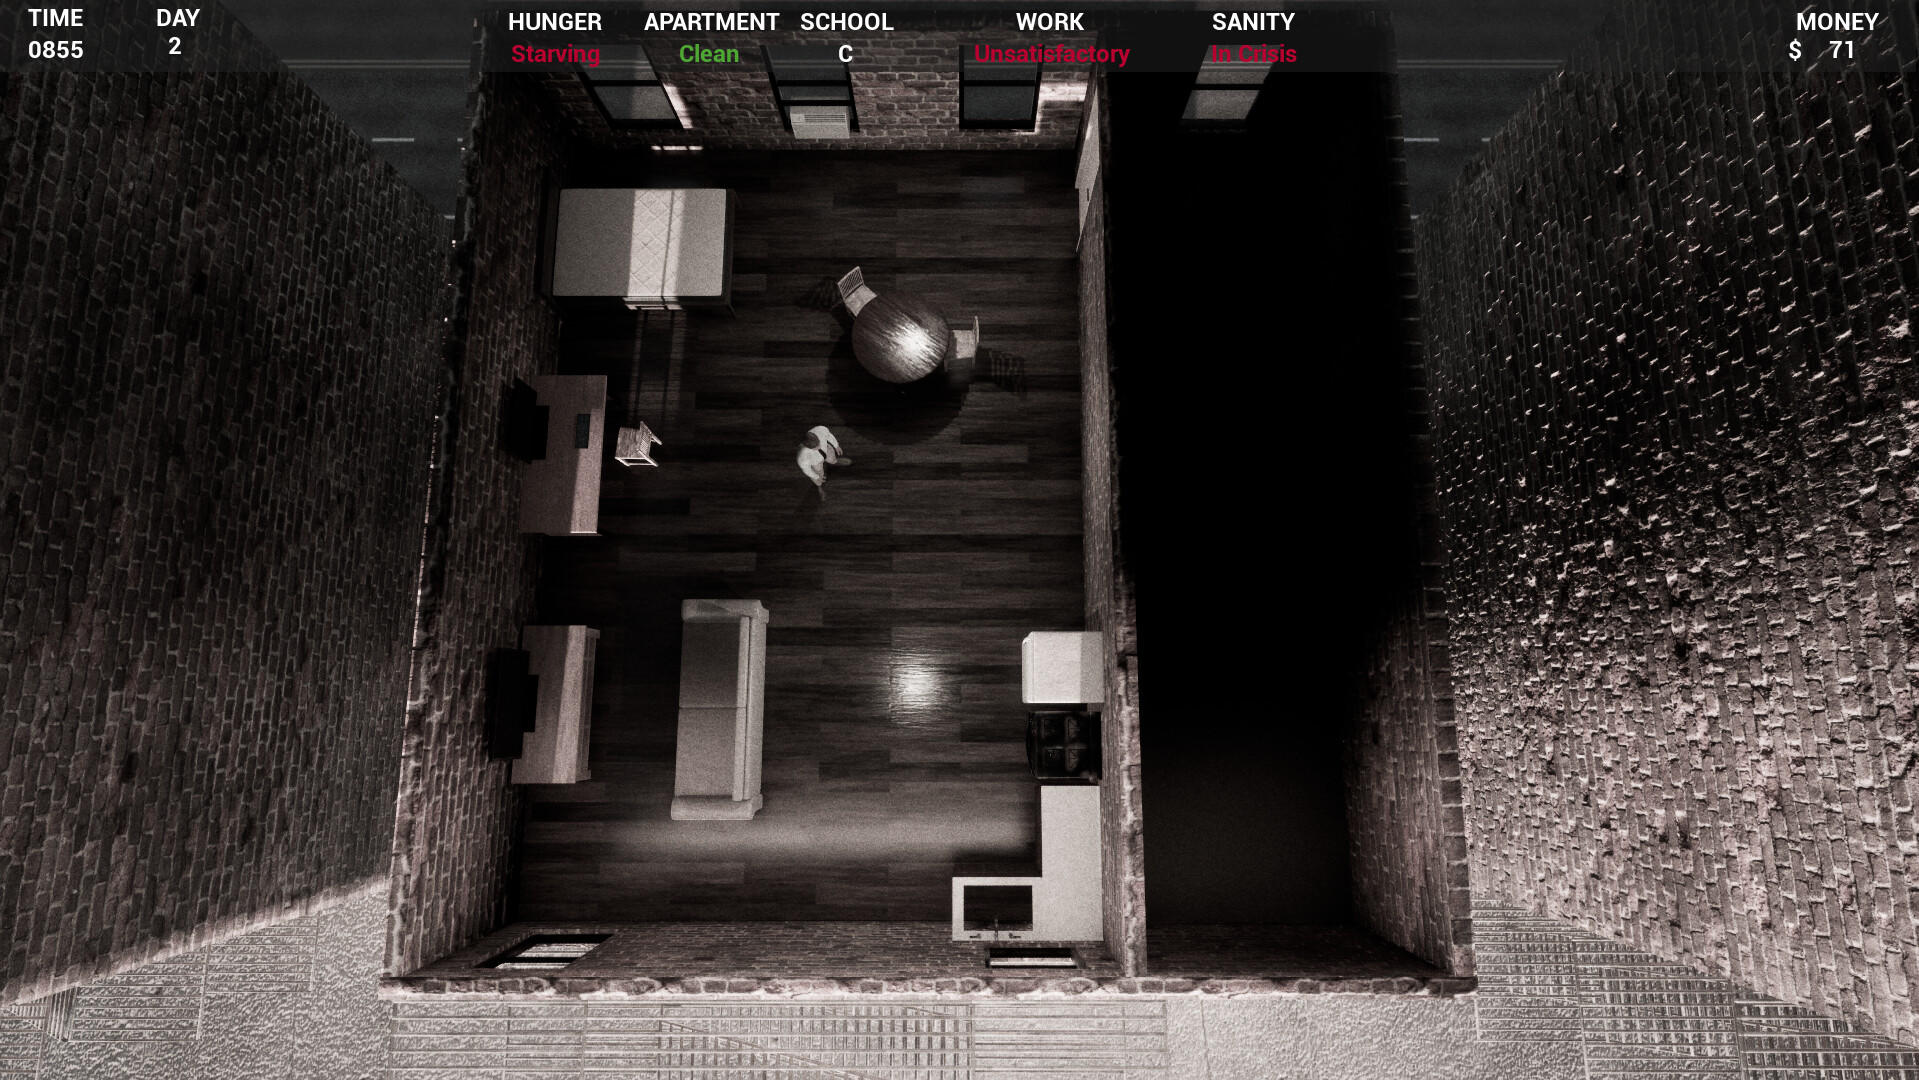 In-Sanity screenshot game